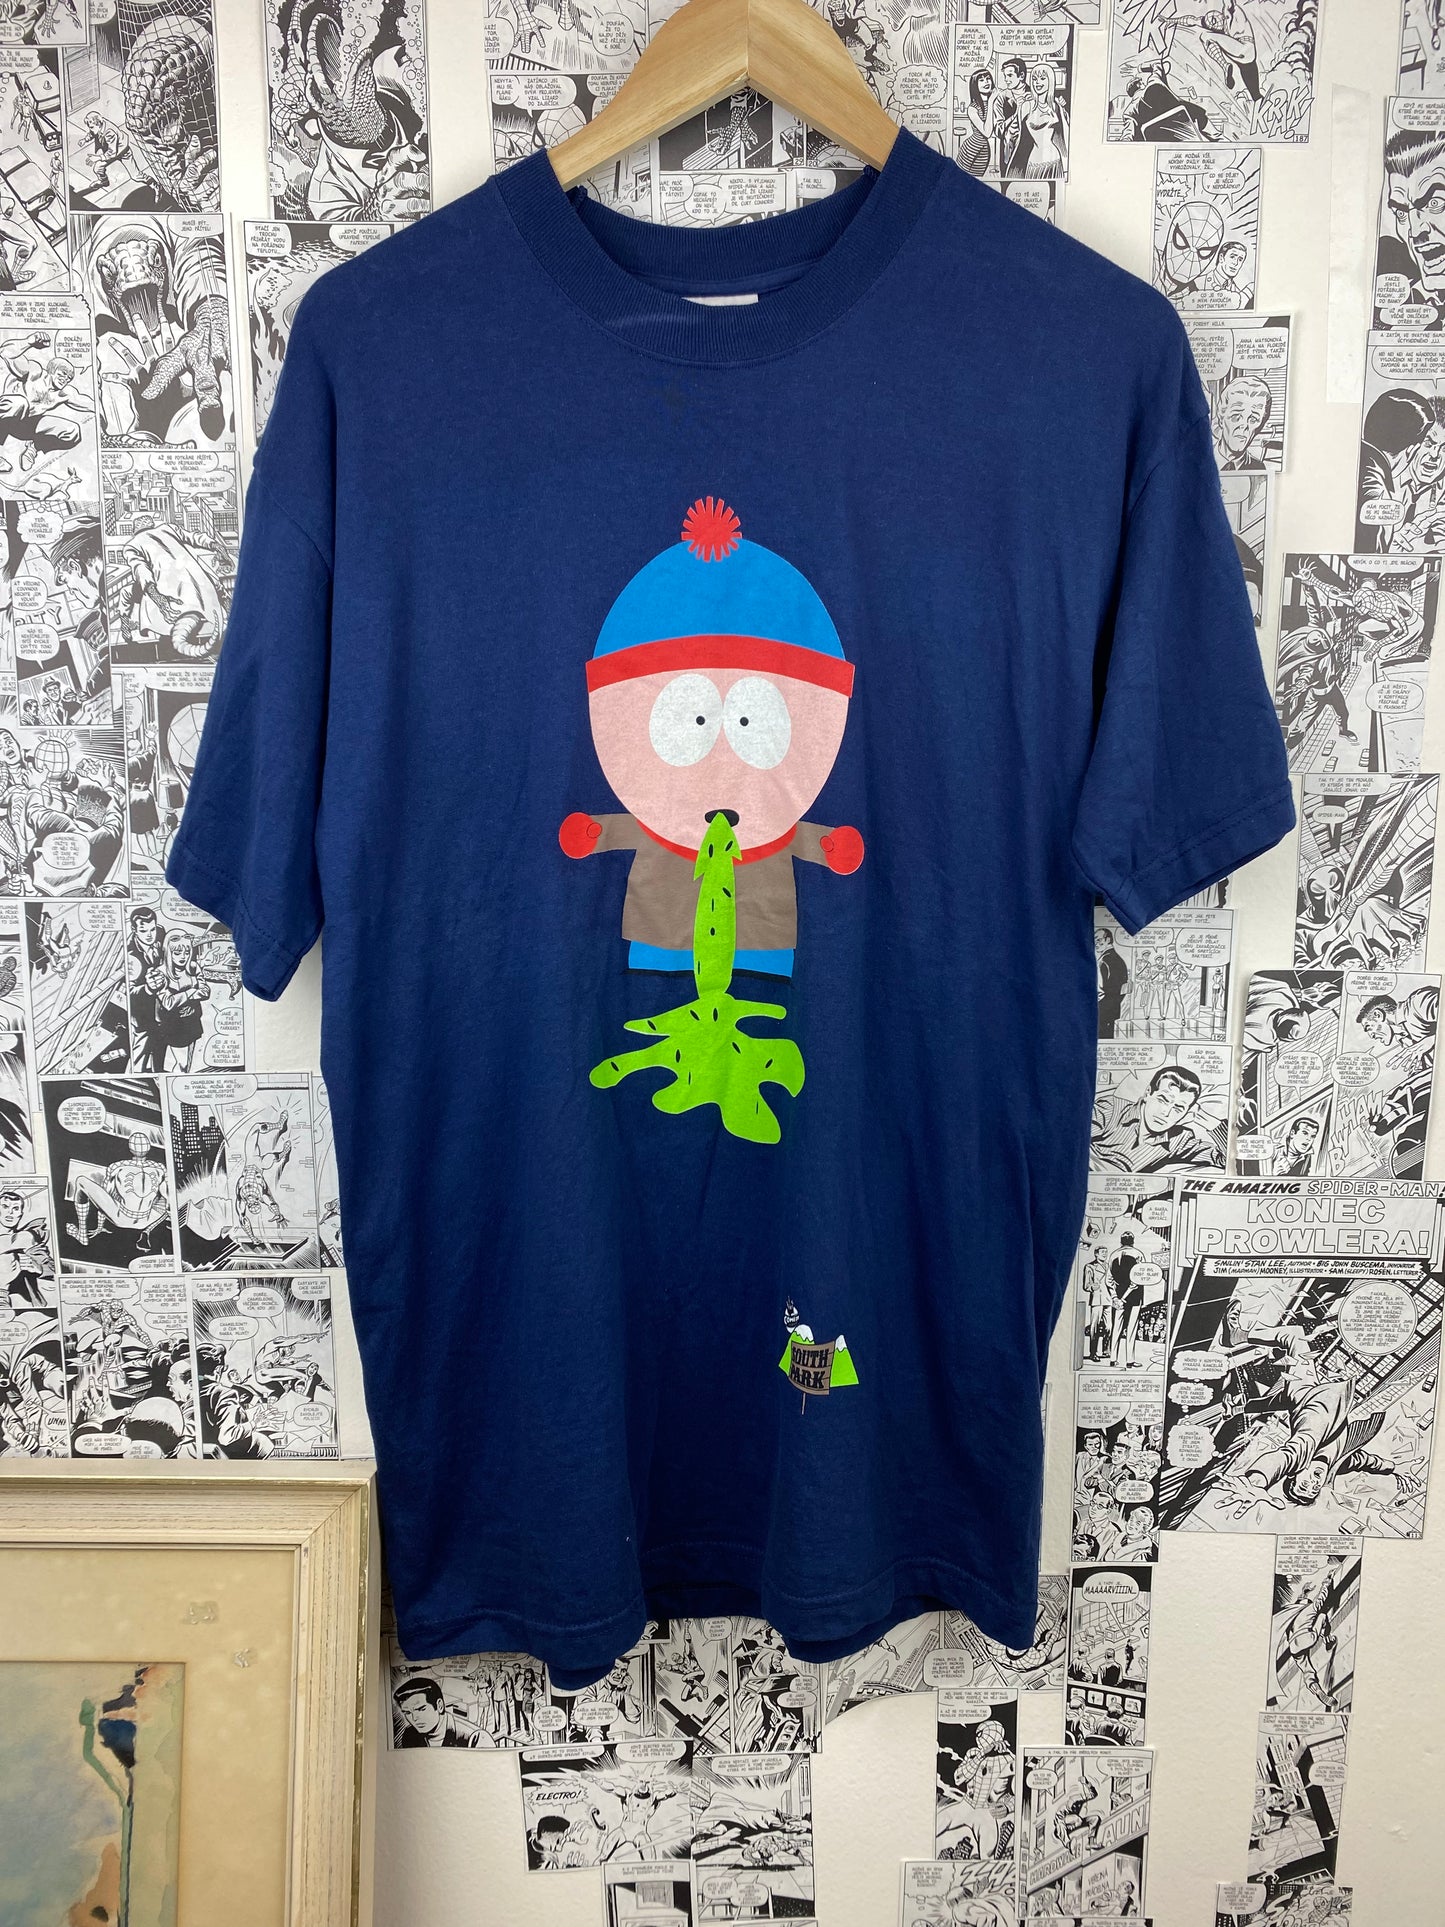 Vintage South Park “Vomiting Stan” t-shirt - size M